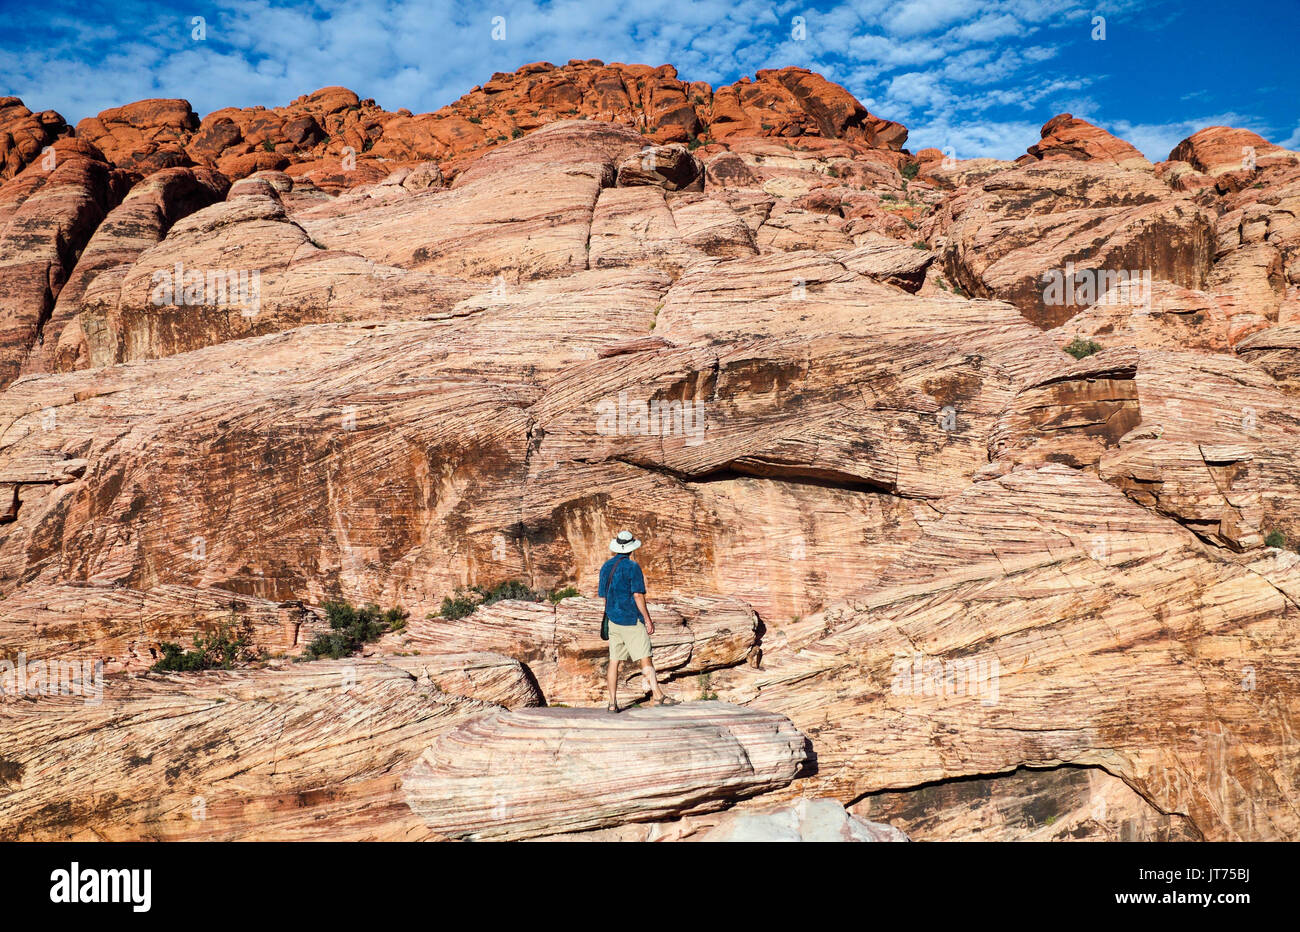 Visiteur explore le Red Rock Canyon National Conservation Area, à environ 20 miles de Las Vegas Banque D'Images